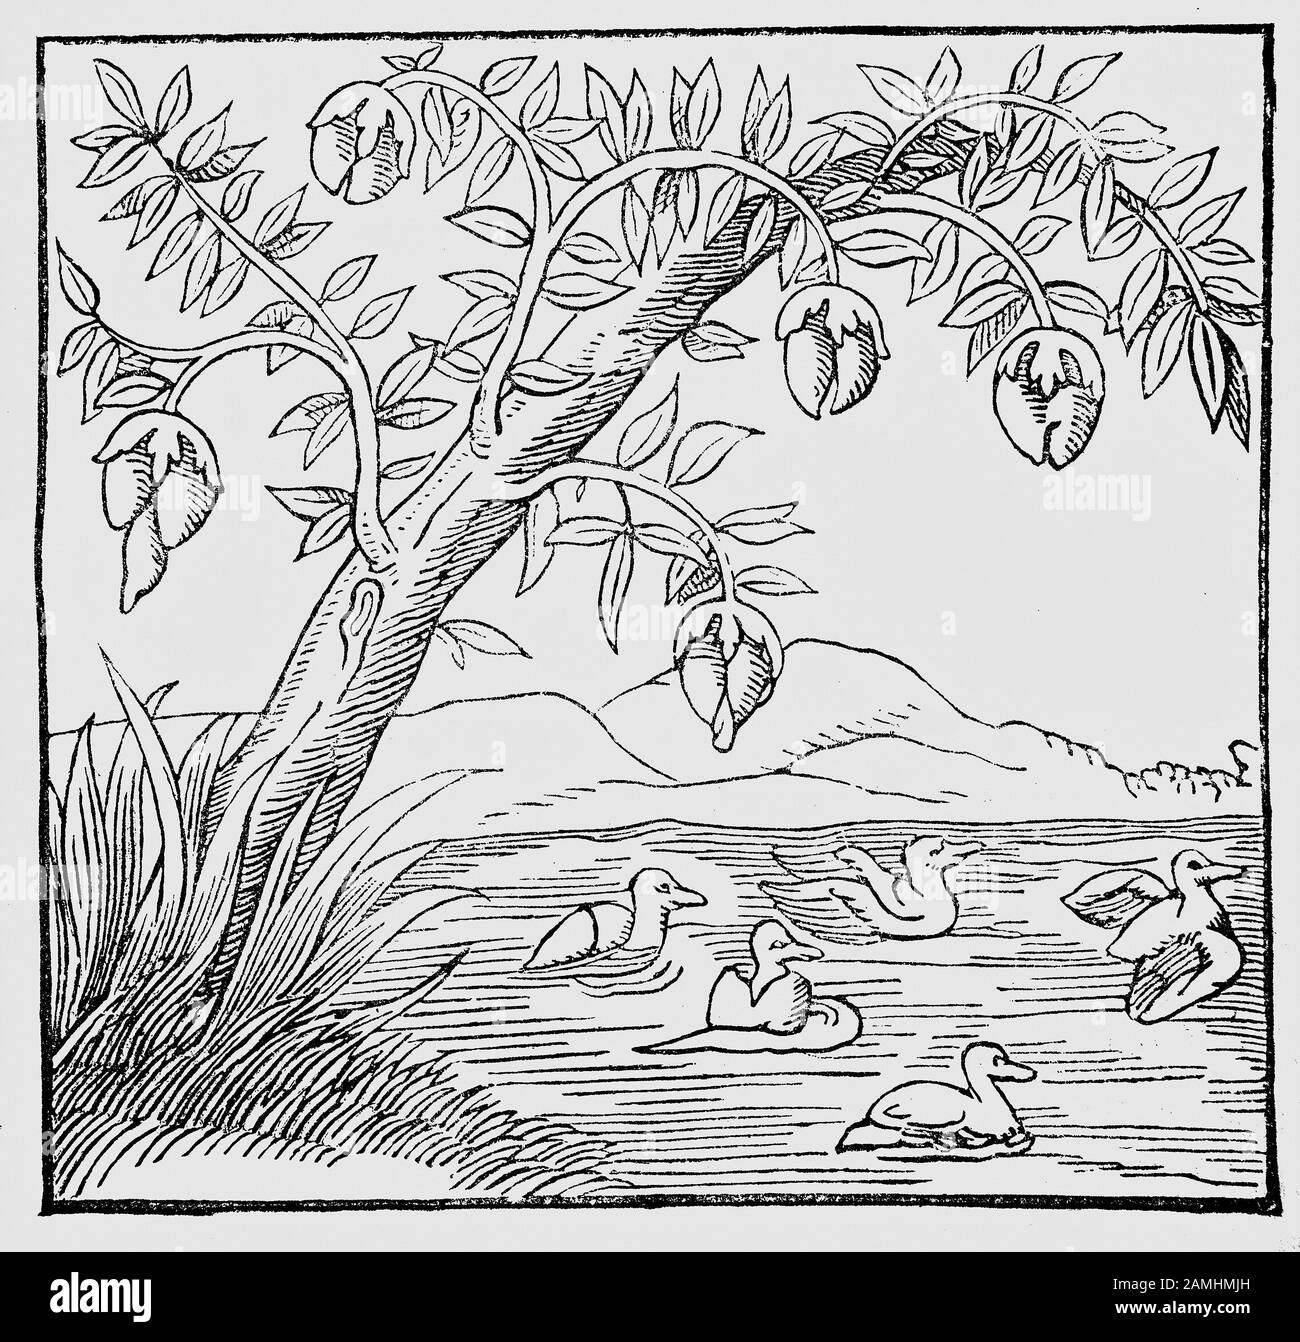 Quand Sebastian Munster était un garçon, il croyait que la sauvagine était dérivée des bourgeons gonflés de certains arbres au-dessus de l'eau. Dans l'illustration de l'oiseau de la 'cosmographie' de Munster, la tête d'un canard peut être vue émergeant du bourgeon à l'extrême gauche. Banque D'Images